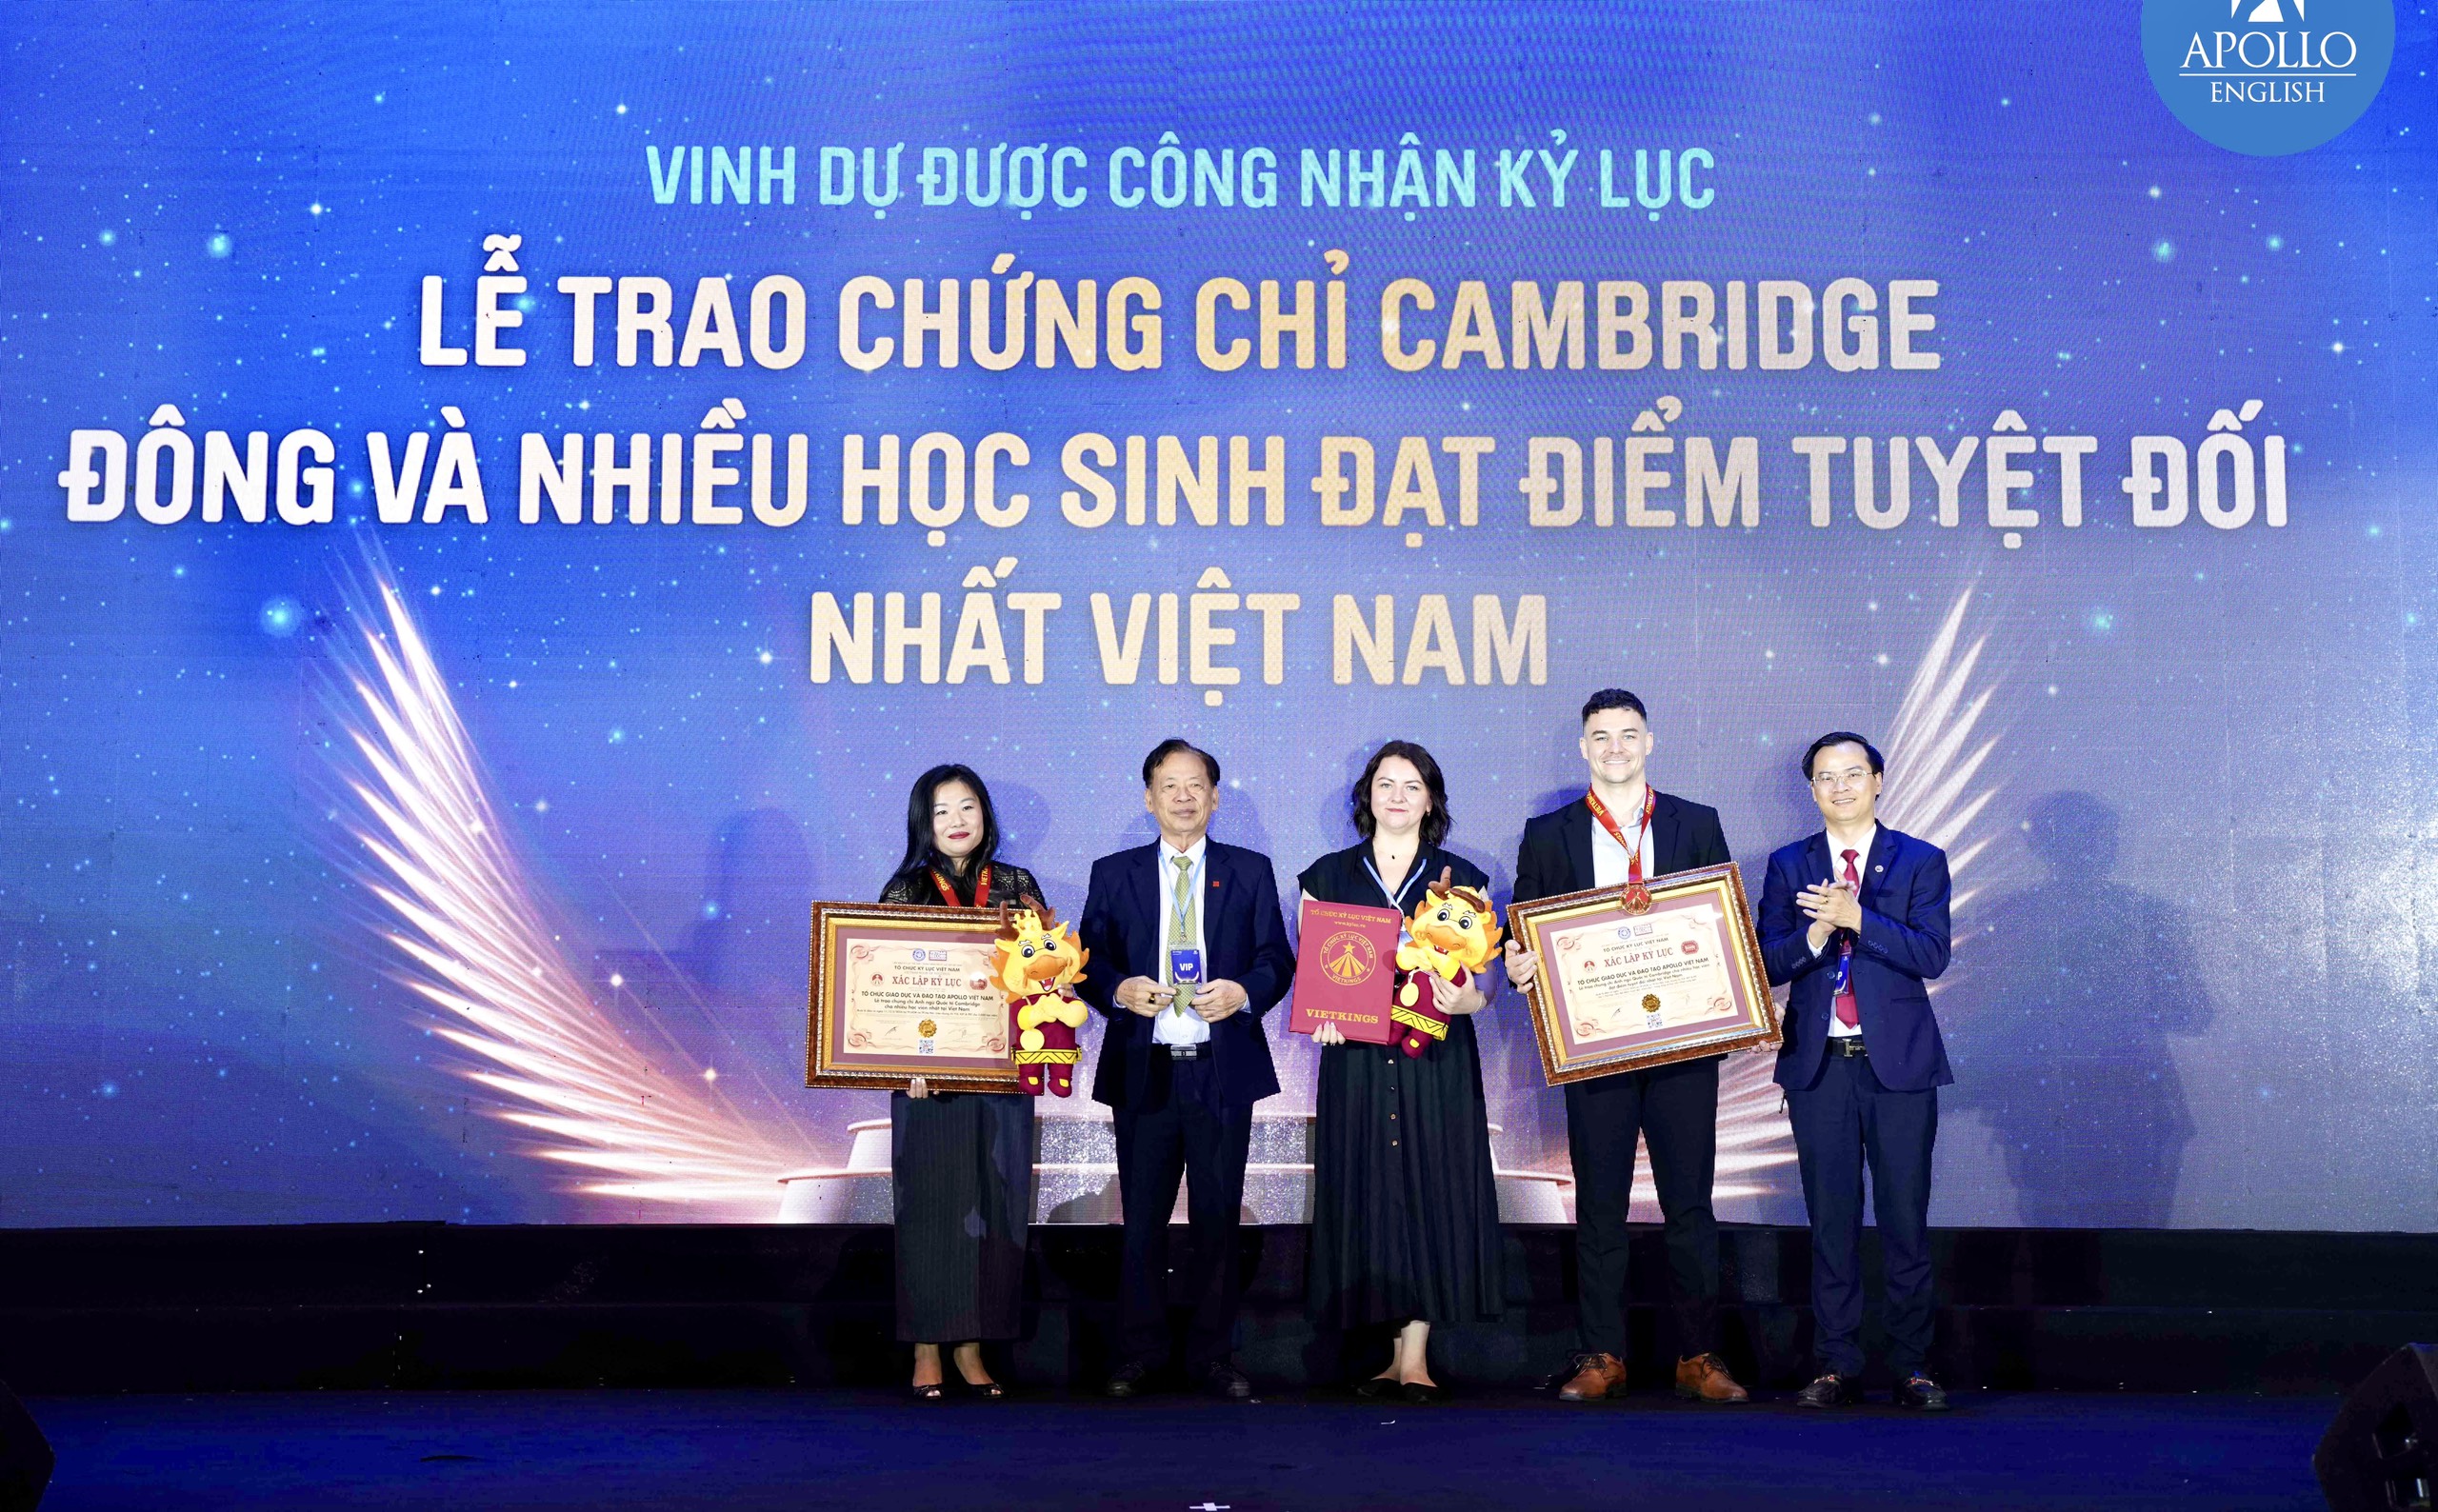 Tiến sĩ Thang Văn Phúc – Nguyên Thứ trưởng Bộ Nội vụ, Chủ tịch TW Hội Kỷ lục gia Việt Nam và ông Hoàng Thái Tuấn Anh trao Kỷ lục đến đại diện Apollo English.